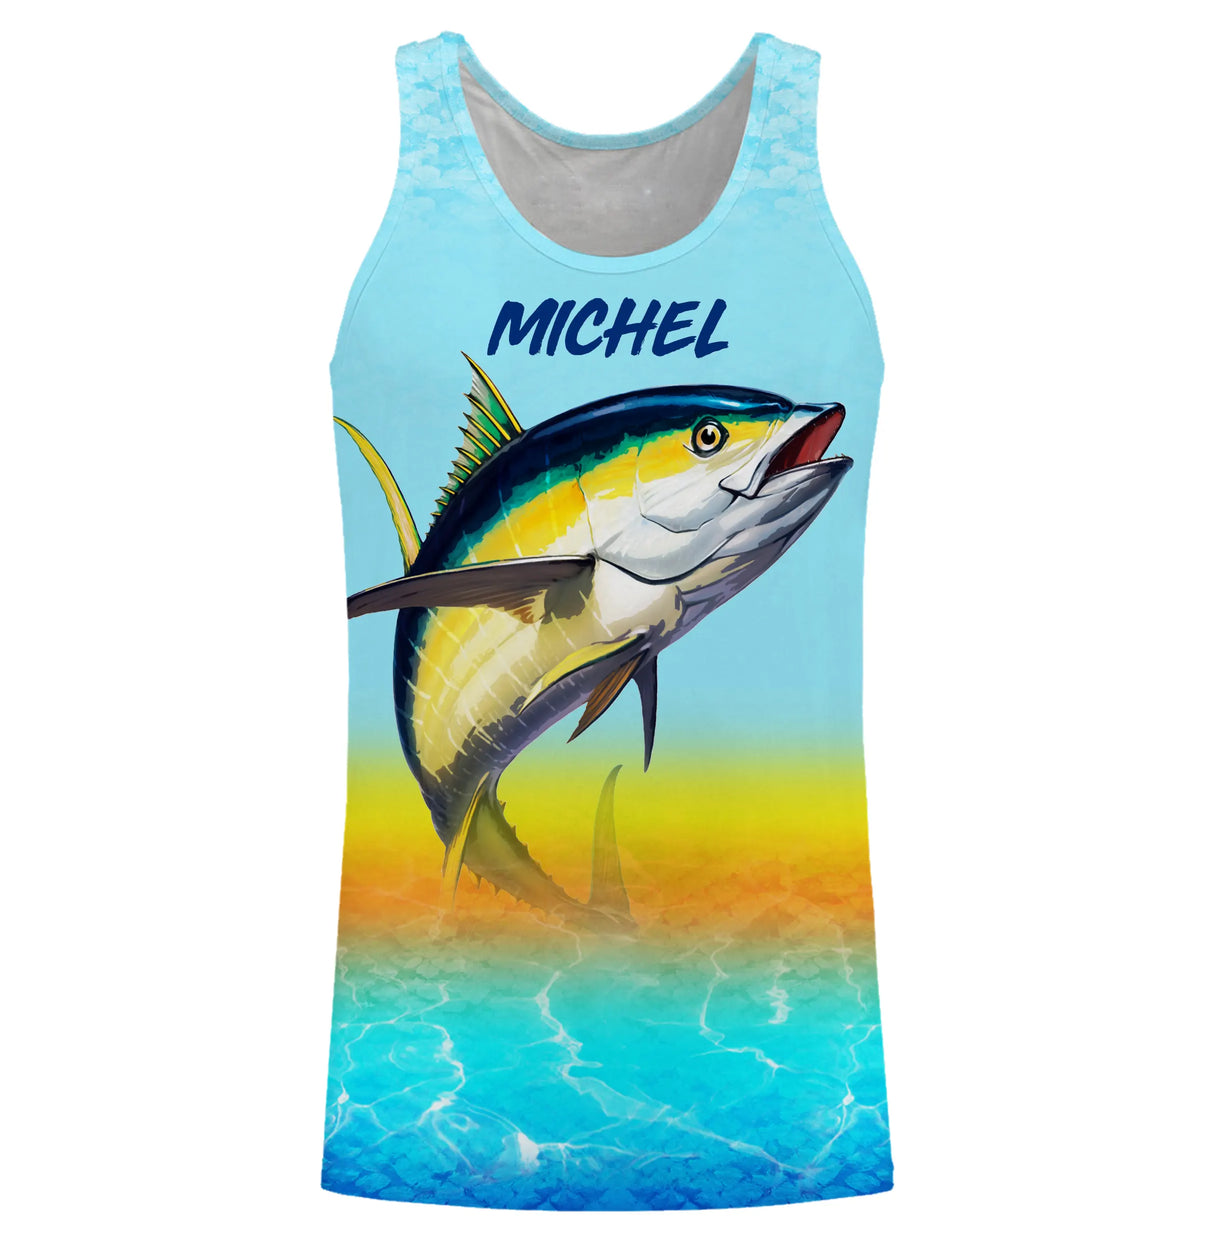 Personalisiertes Anti-UV-Thunfisch-Angel-T-Shirt, originelles Fischergeschenk, Meeresangeln - CT05082221